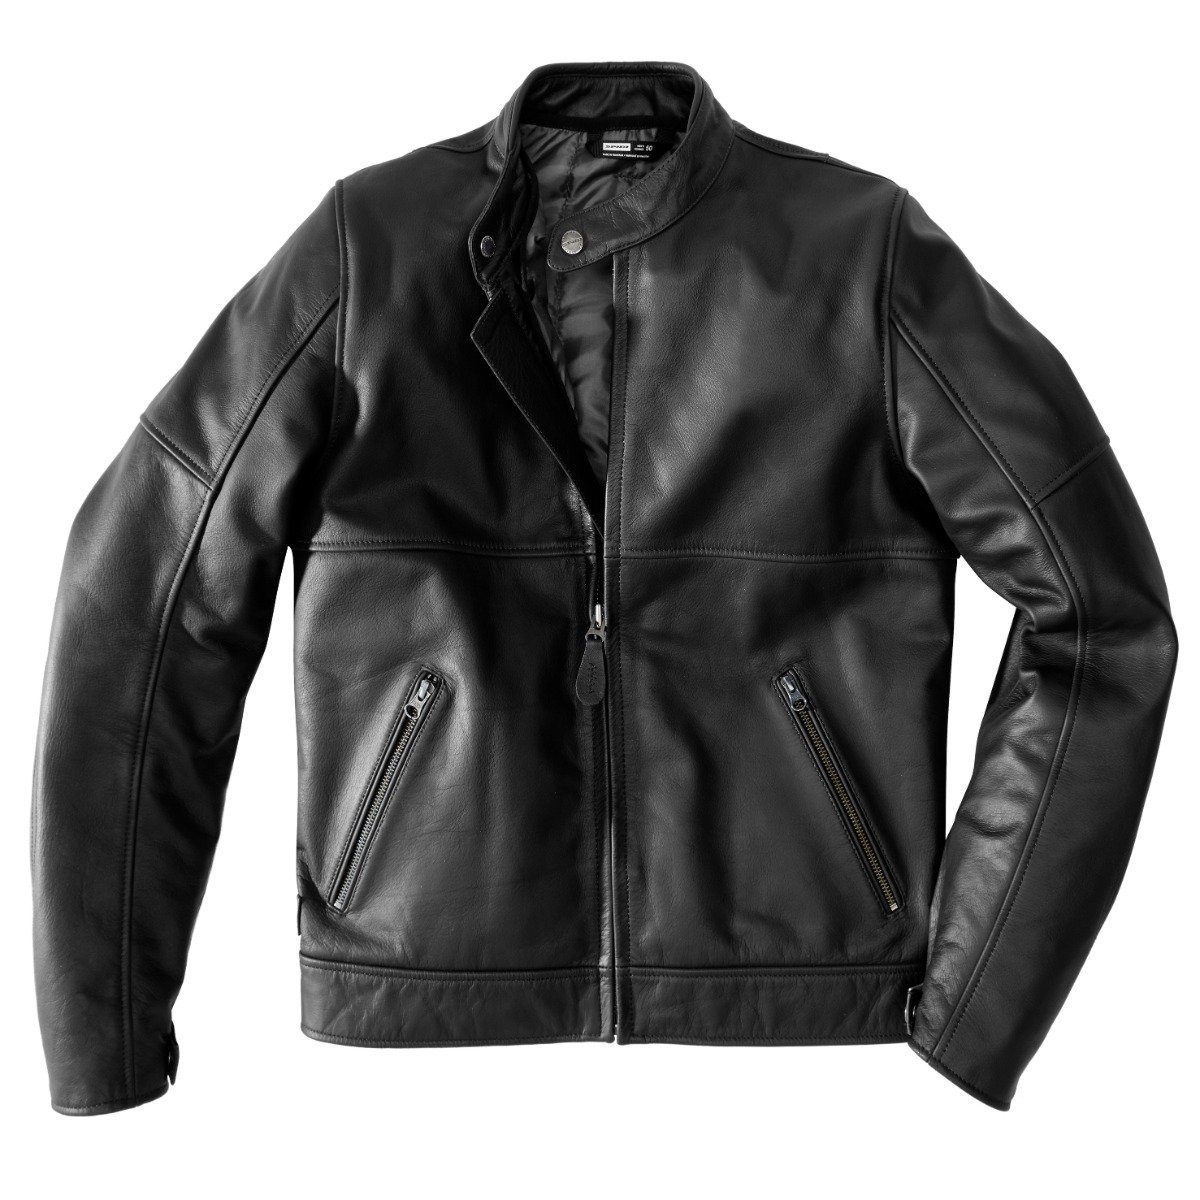 Image of Spidi Mack Jacket Black Size 48 ID 8030161448351